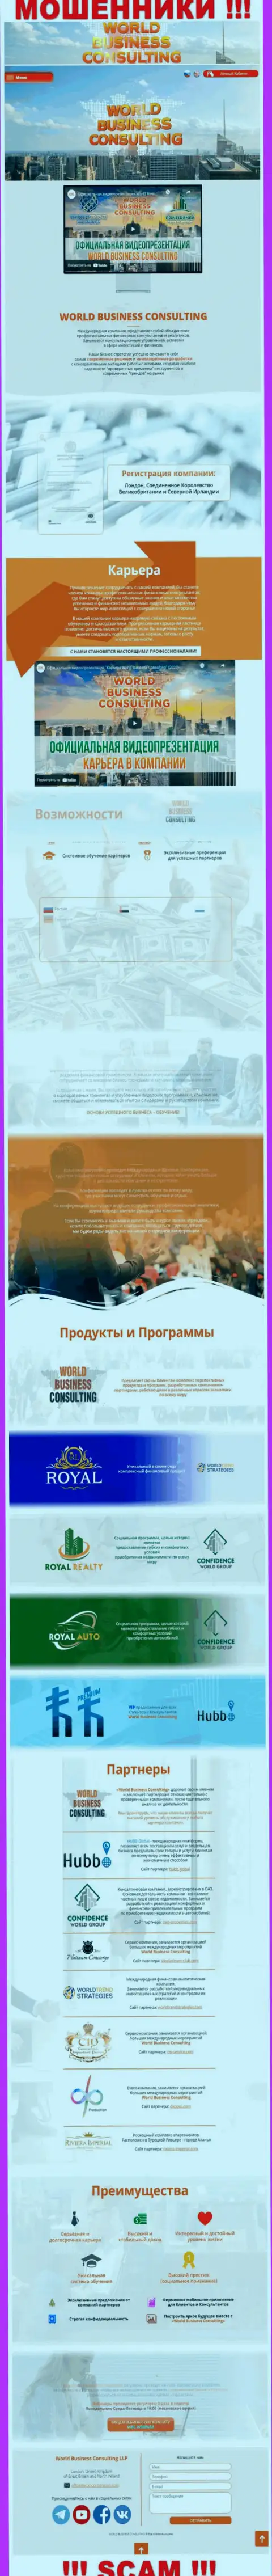 Веб-портал мошенников WorldBusinessConsulting